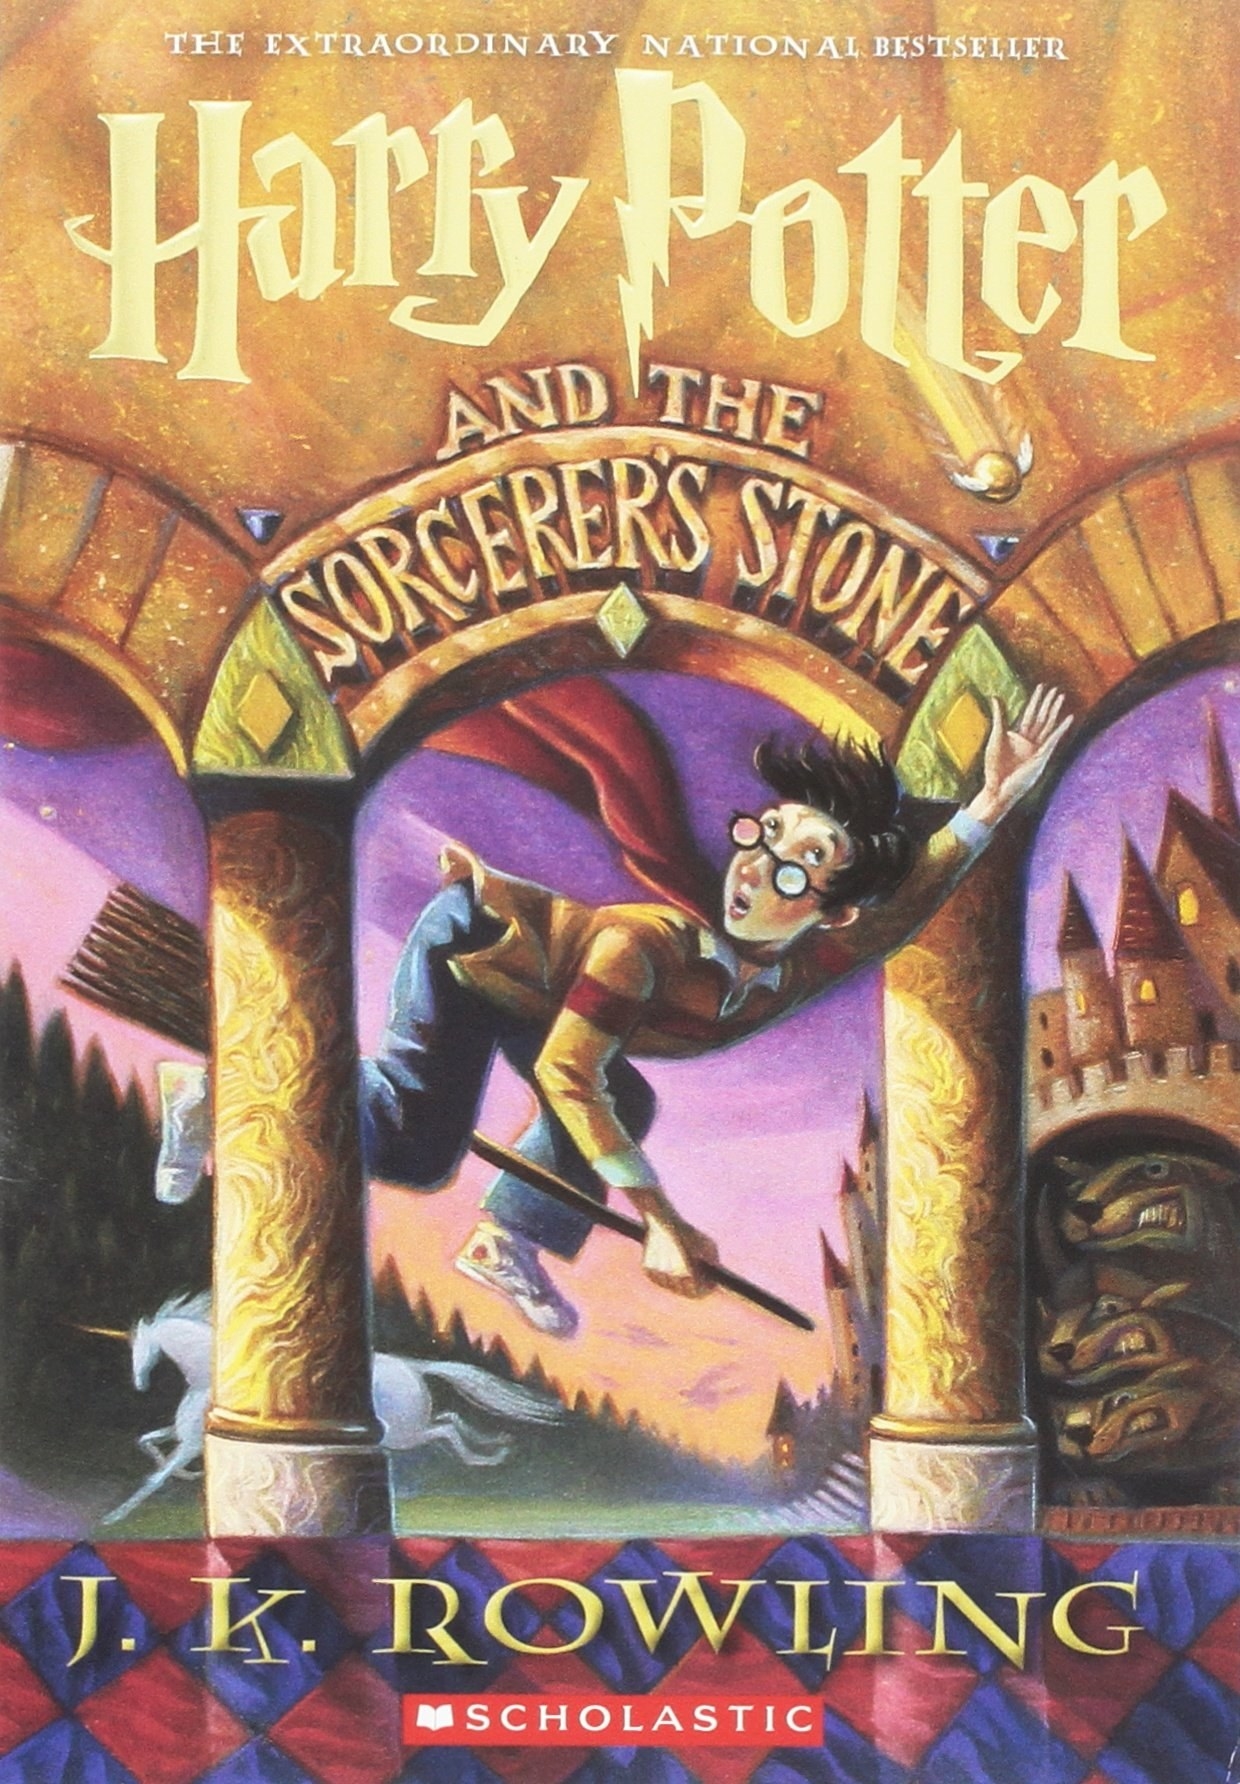 书的封面的《哈利波特与魔法# x27; s石头